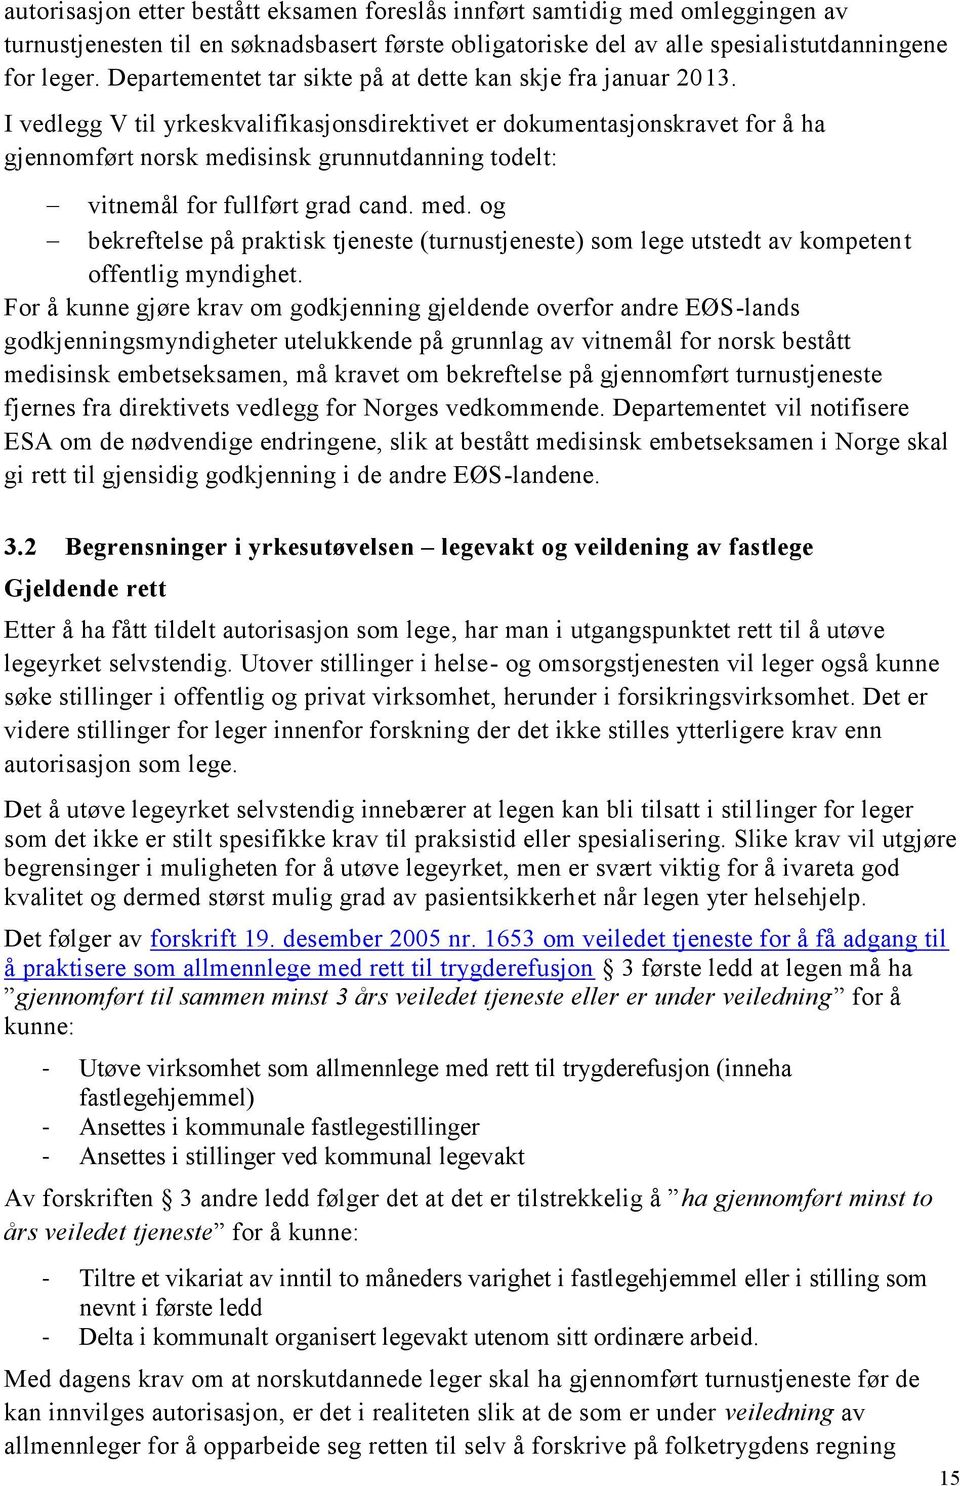 I vedlegg V til yrkeskvalifikasjonsdirektivet er dokumentasjonskravet for å ha gjennomført norsk medi